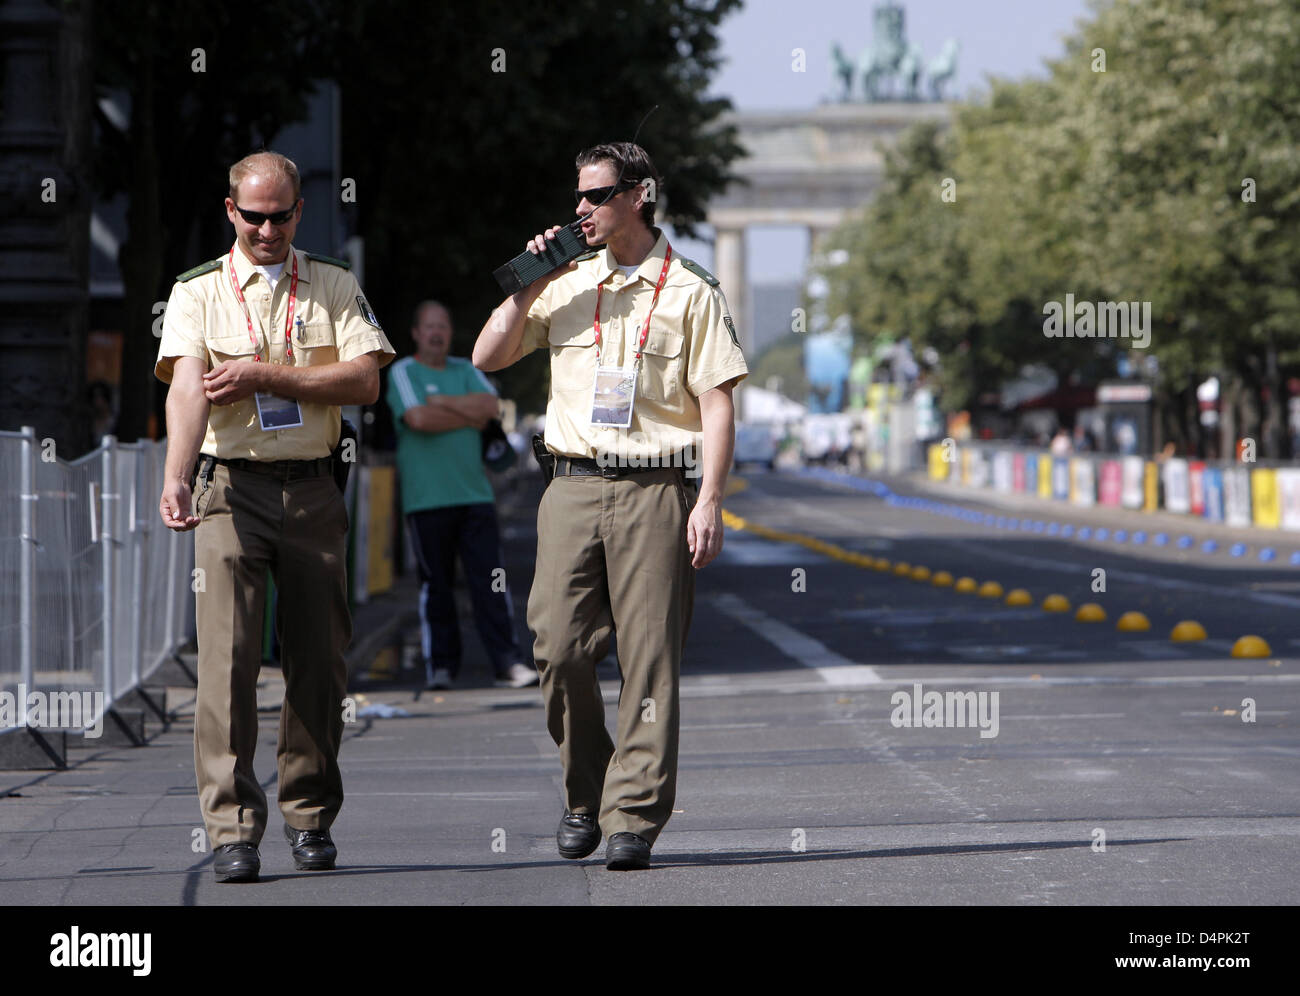 Officerss zwei Polizisten bewachen die Strecke von 20km gehen bei den 12. IAAF World Championships in Athletics Berlin 2009 in Berlin, Deutschland, 15. August 2009. Foto: JENS Büttner Stockfoto